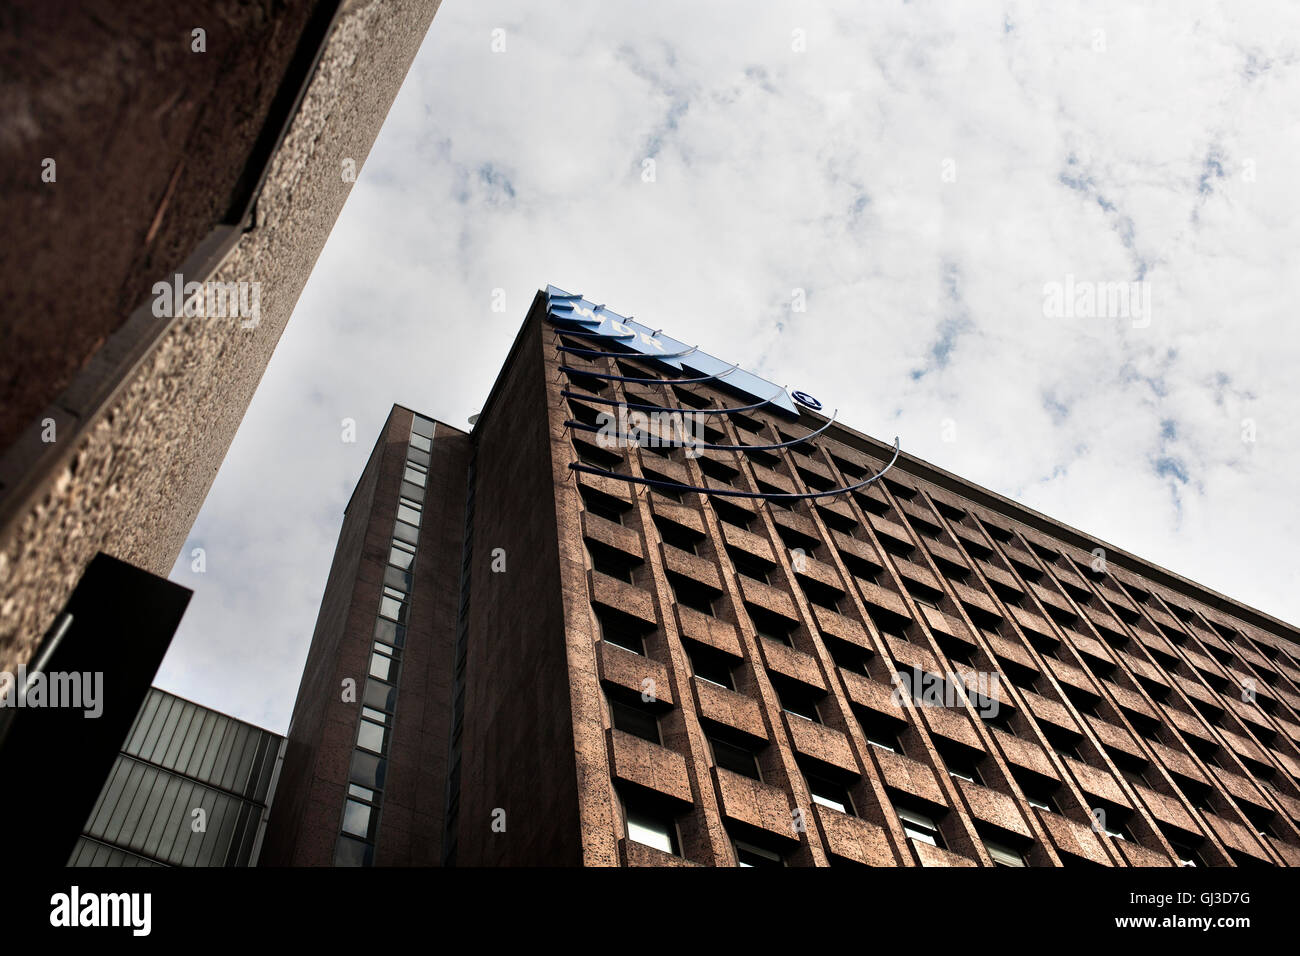 Complexe de bureaux moderne de WDR TV channel architecture d'après-guerre à Cologne Allemagne Banque D'Images